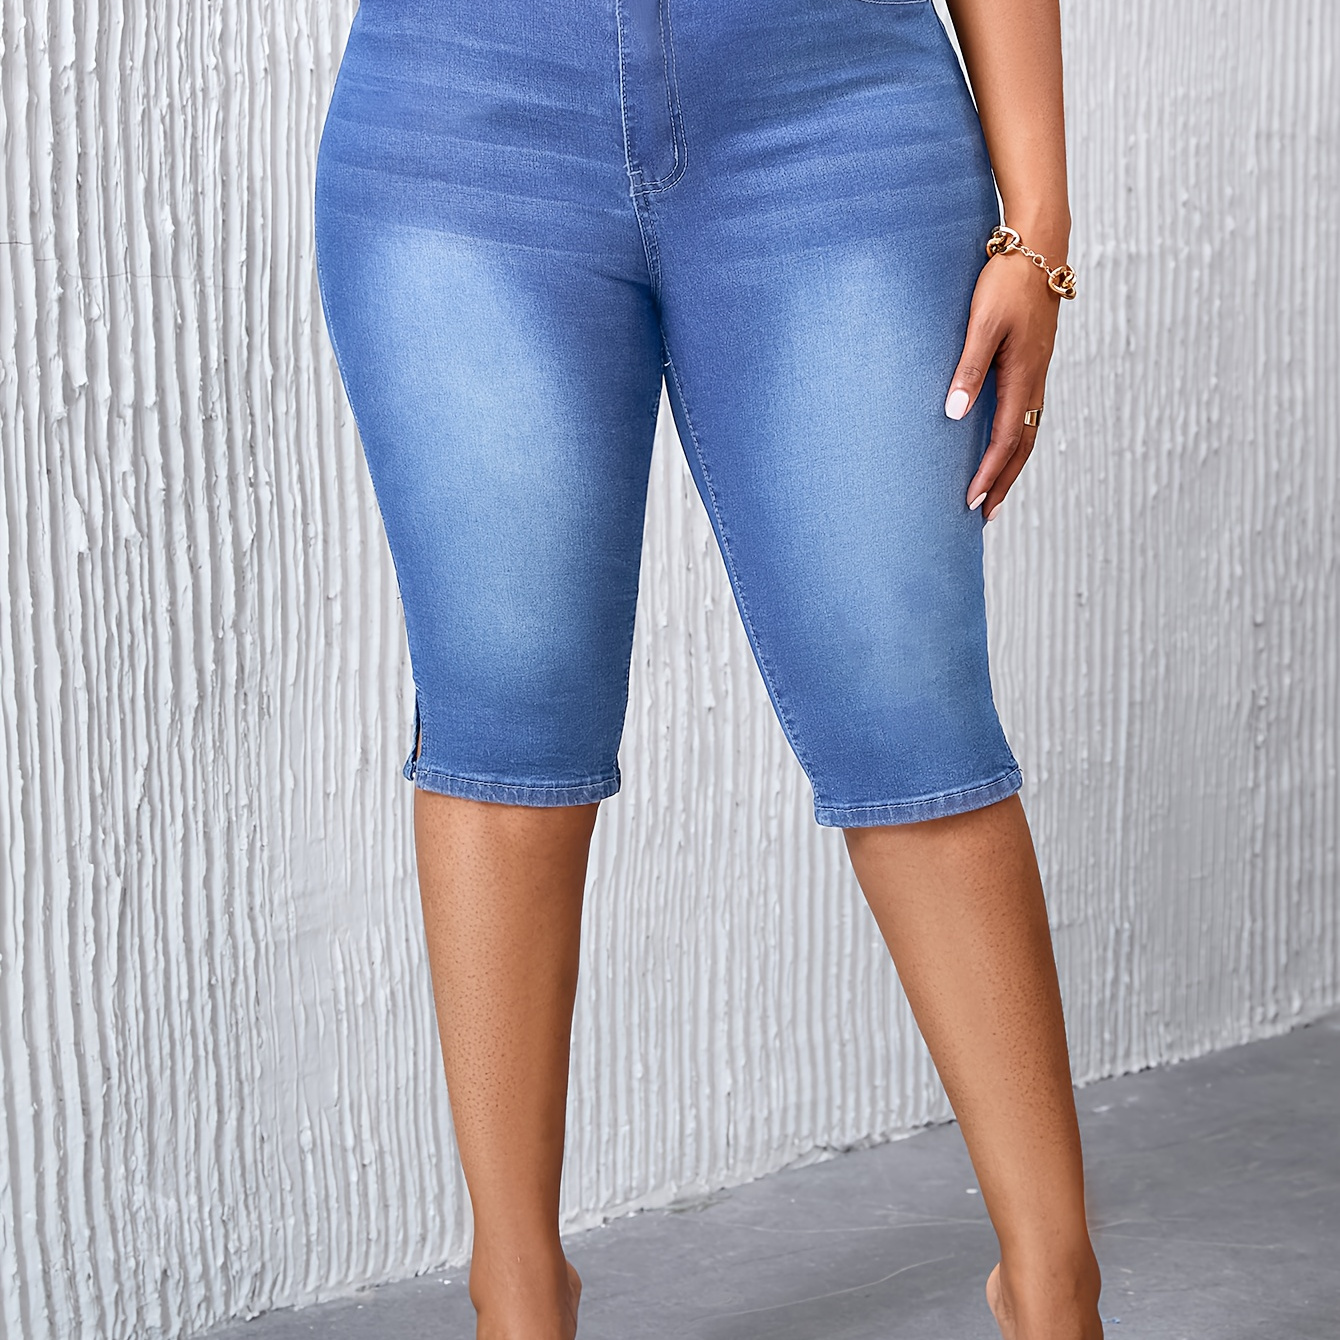 

Pantalon en jean bleu clair délavé, longueur genou, extensible et tendance pour femme, grande taille